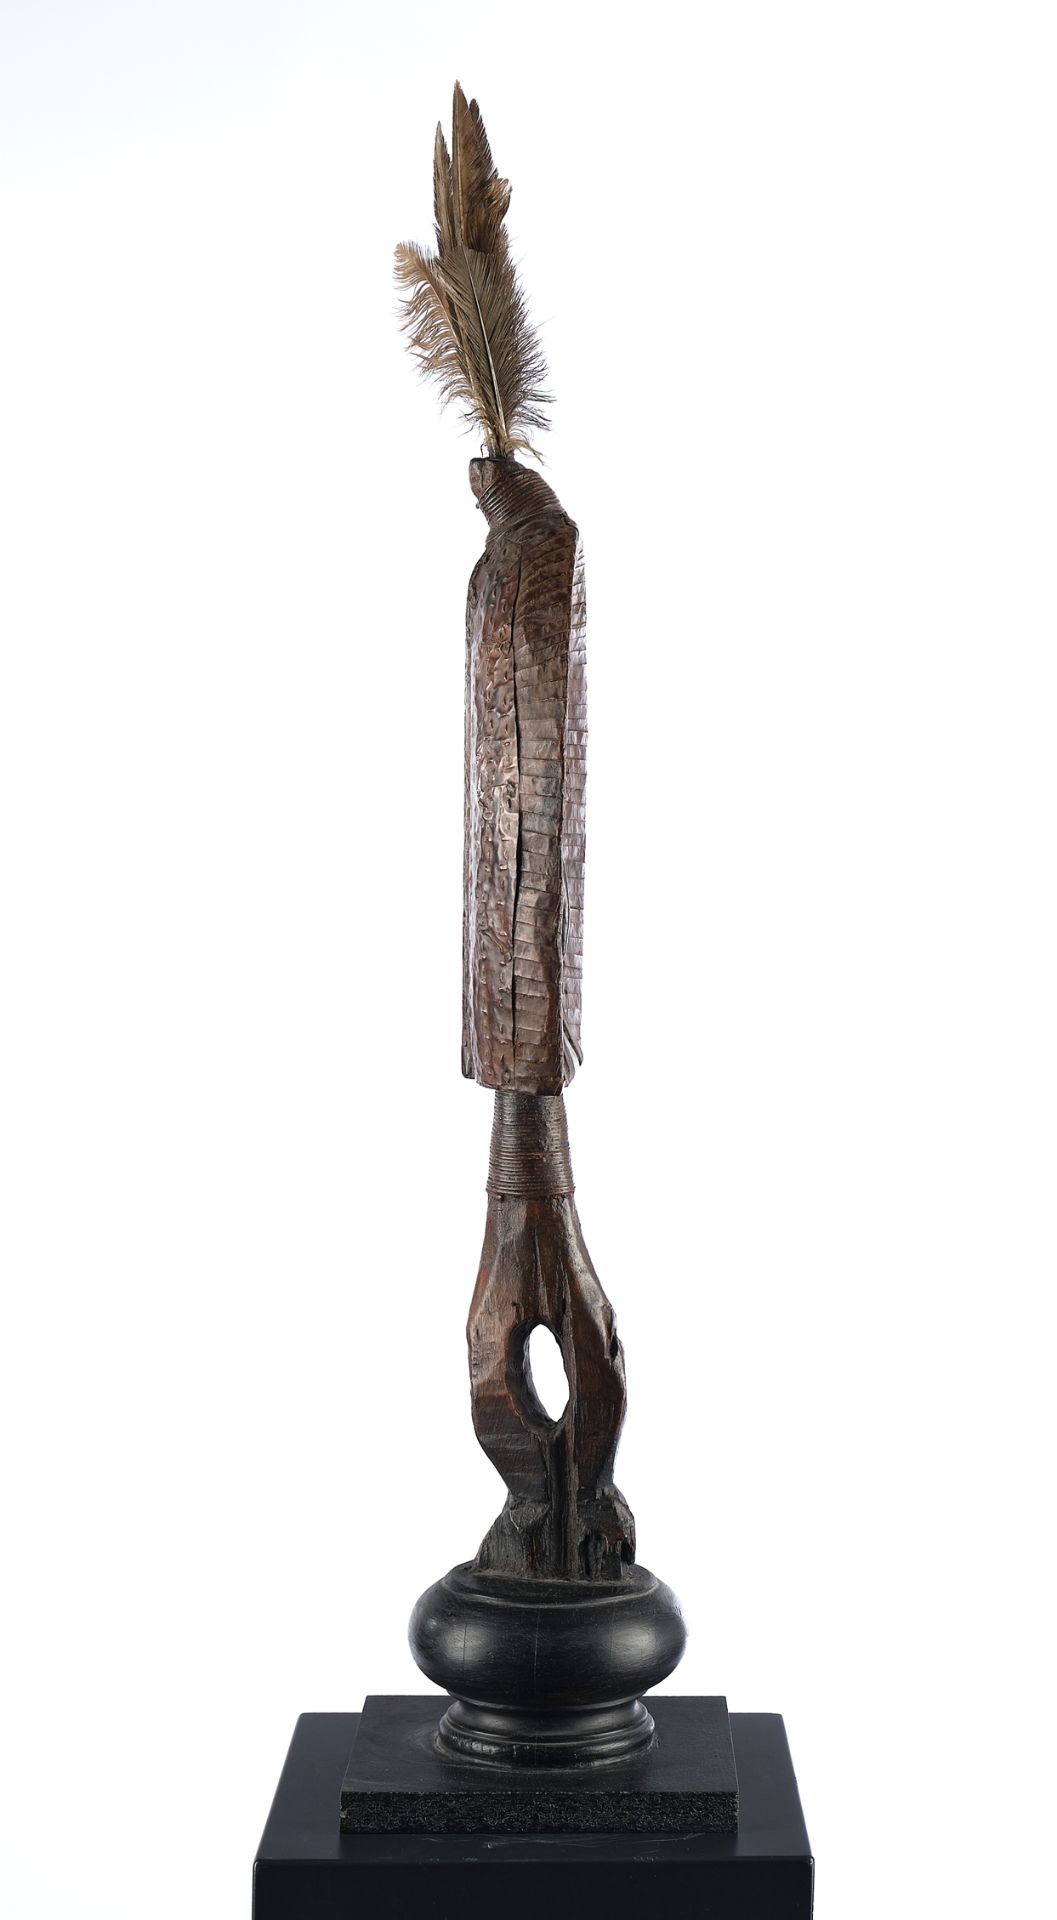 Reliquienfigur, Mahongwe, Gabun, Afrika, Grabwächter aus Holz, mit Metallstreifen und Blech belegt, - Bild 2 aus 4